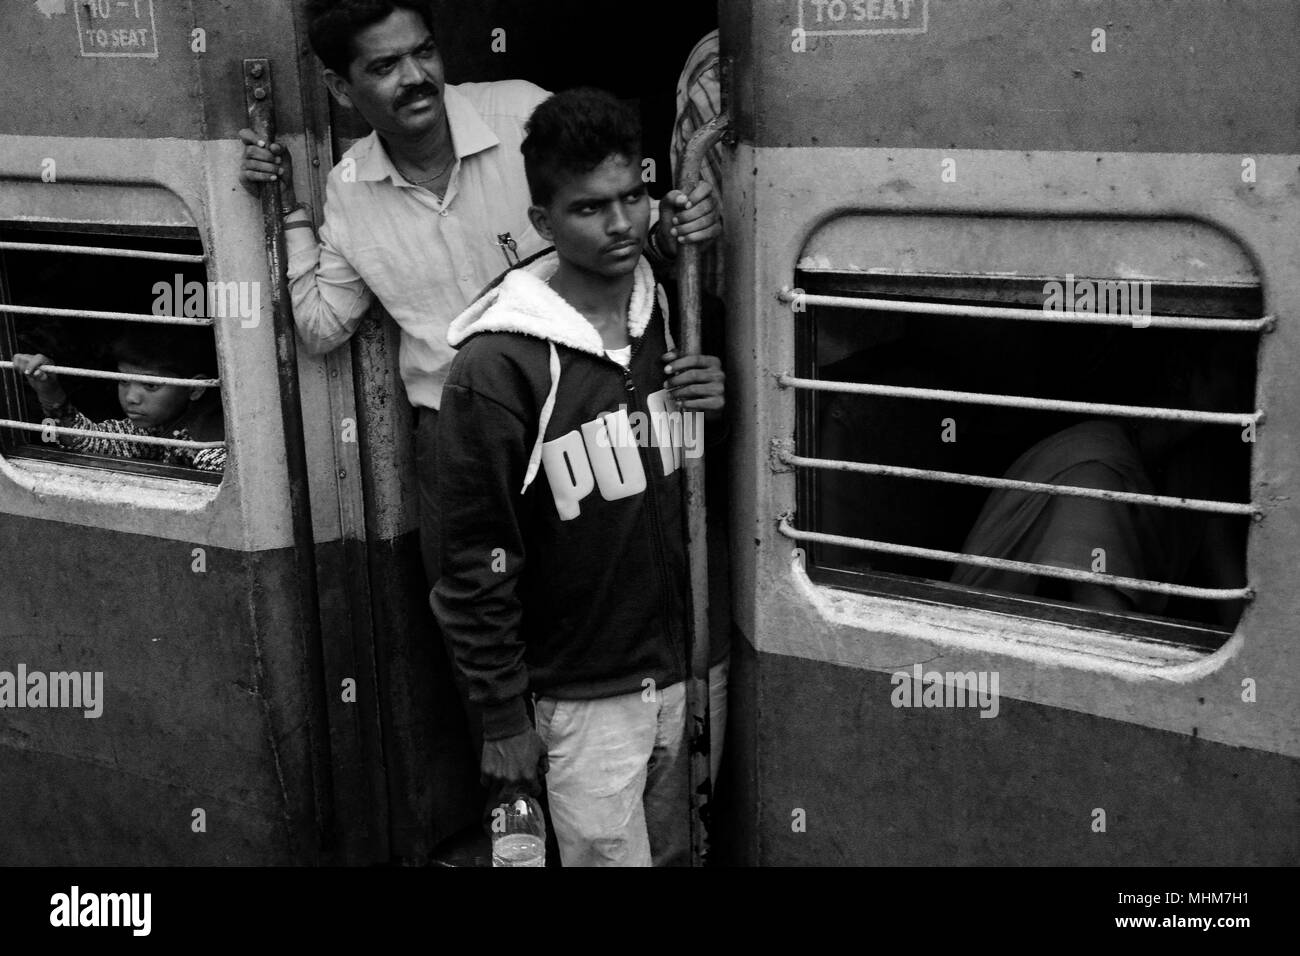 Zwei Männer gefährlich heraus hängen von der Tür in Erwartung Ihrer Ankunft am Zielort, Indien Stockfoto